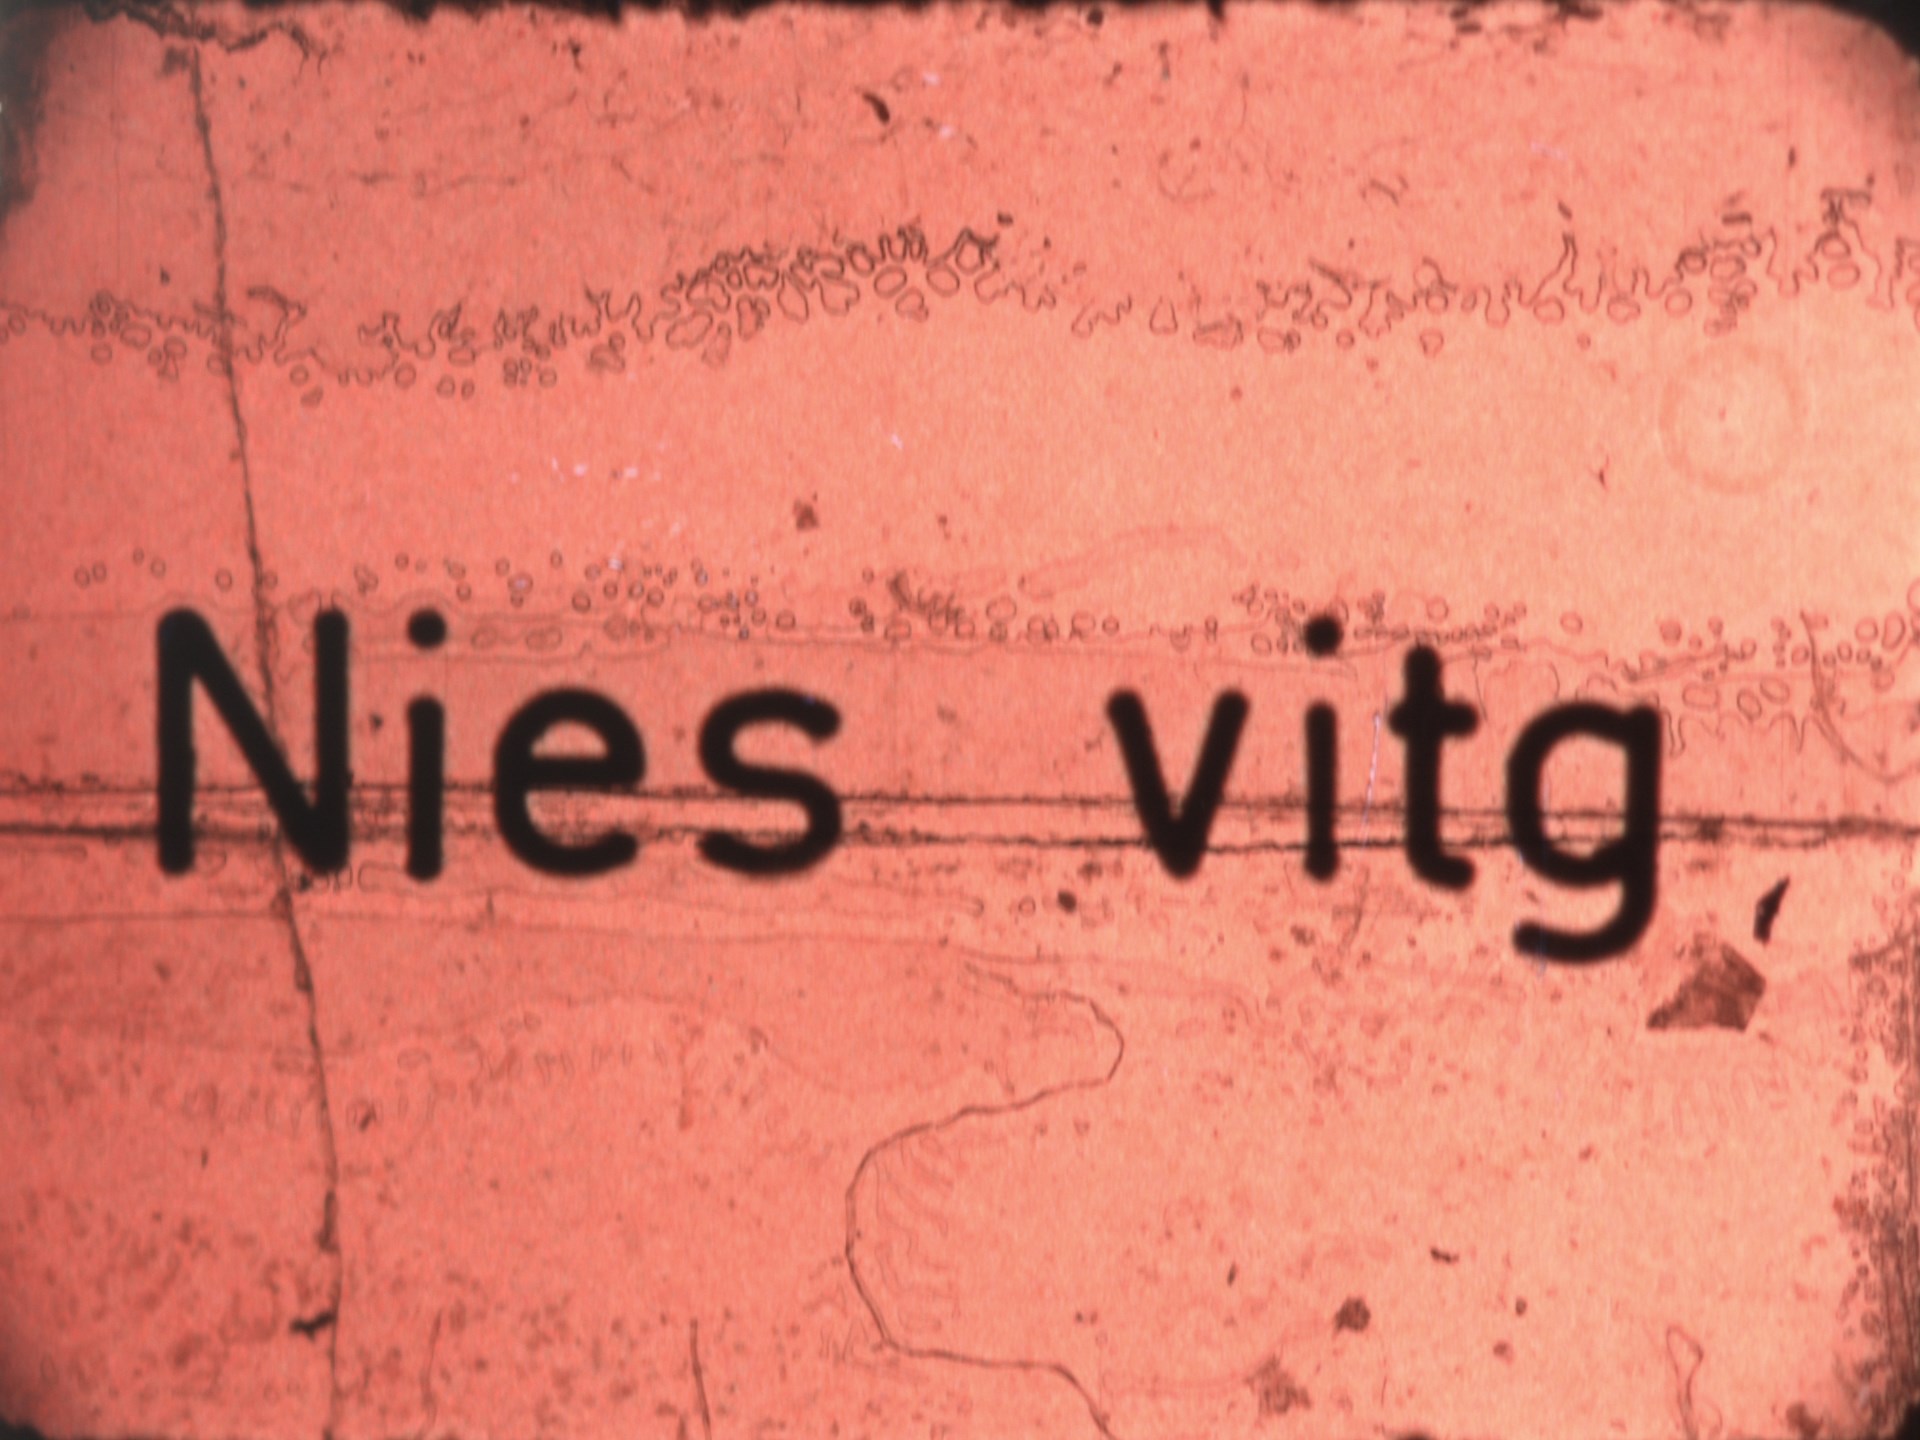 Nies vitg (1968-1973)